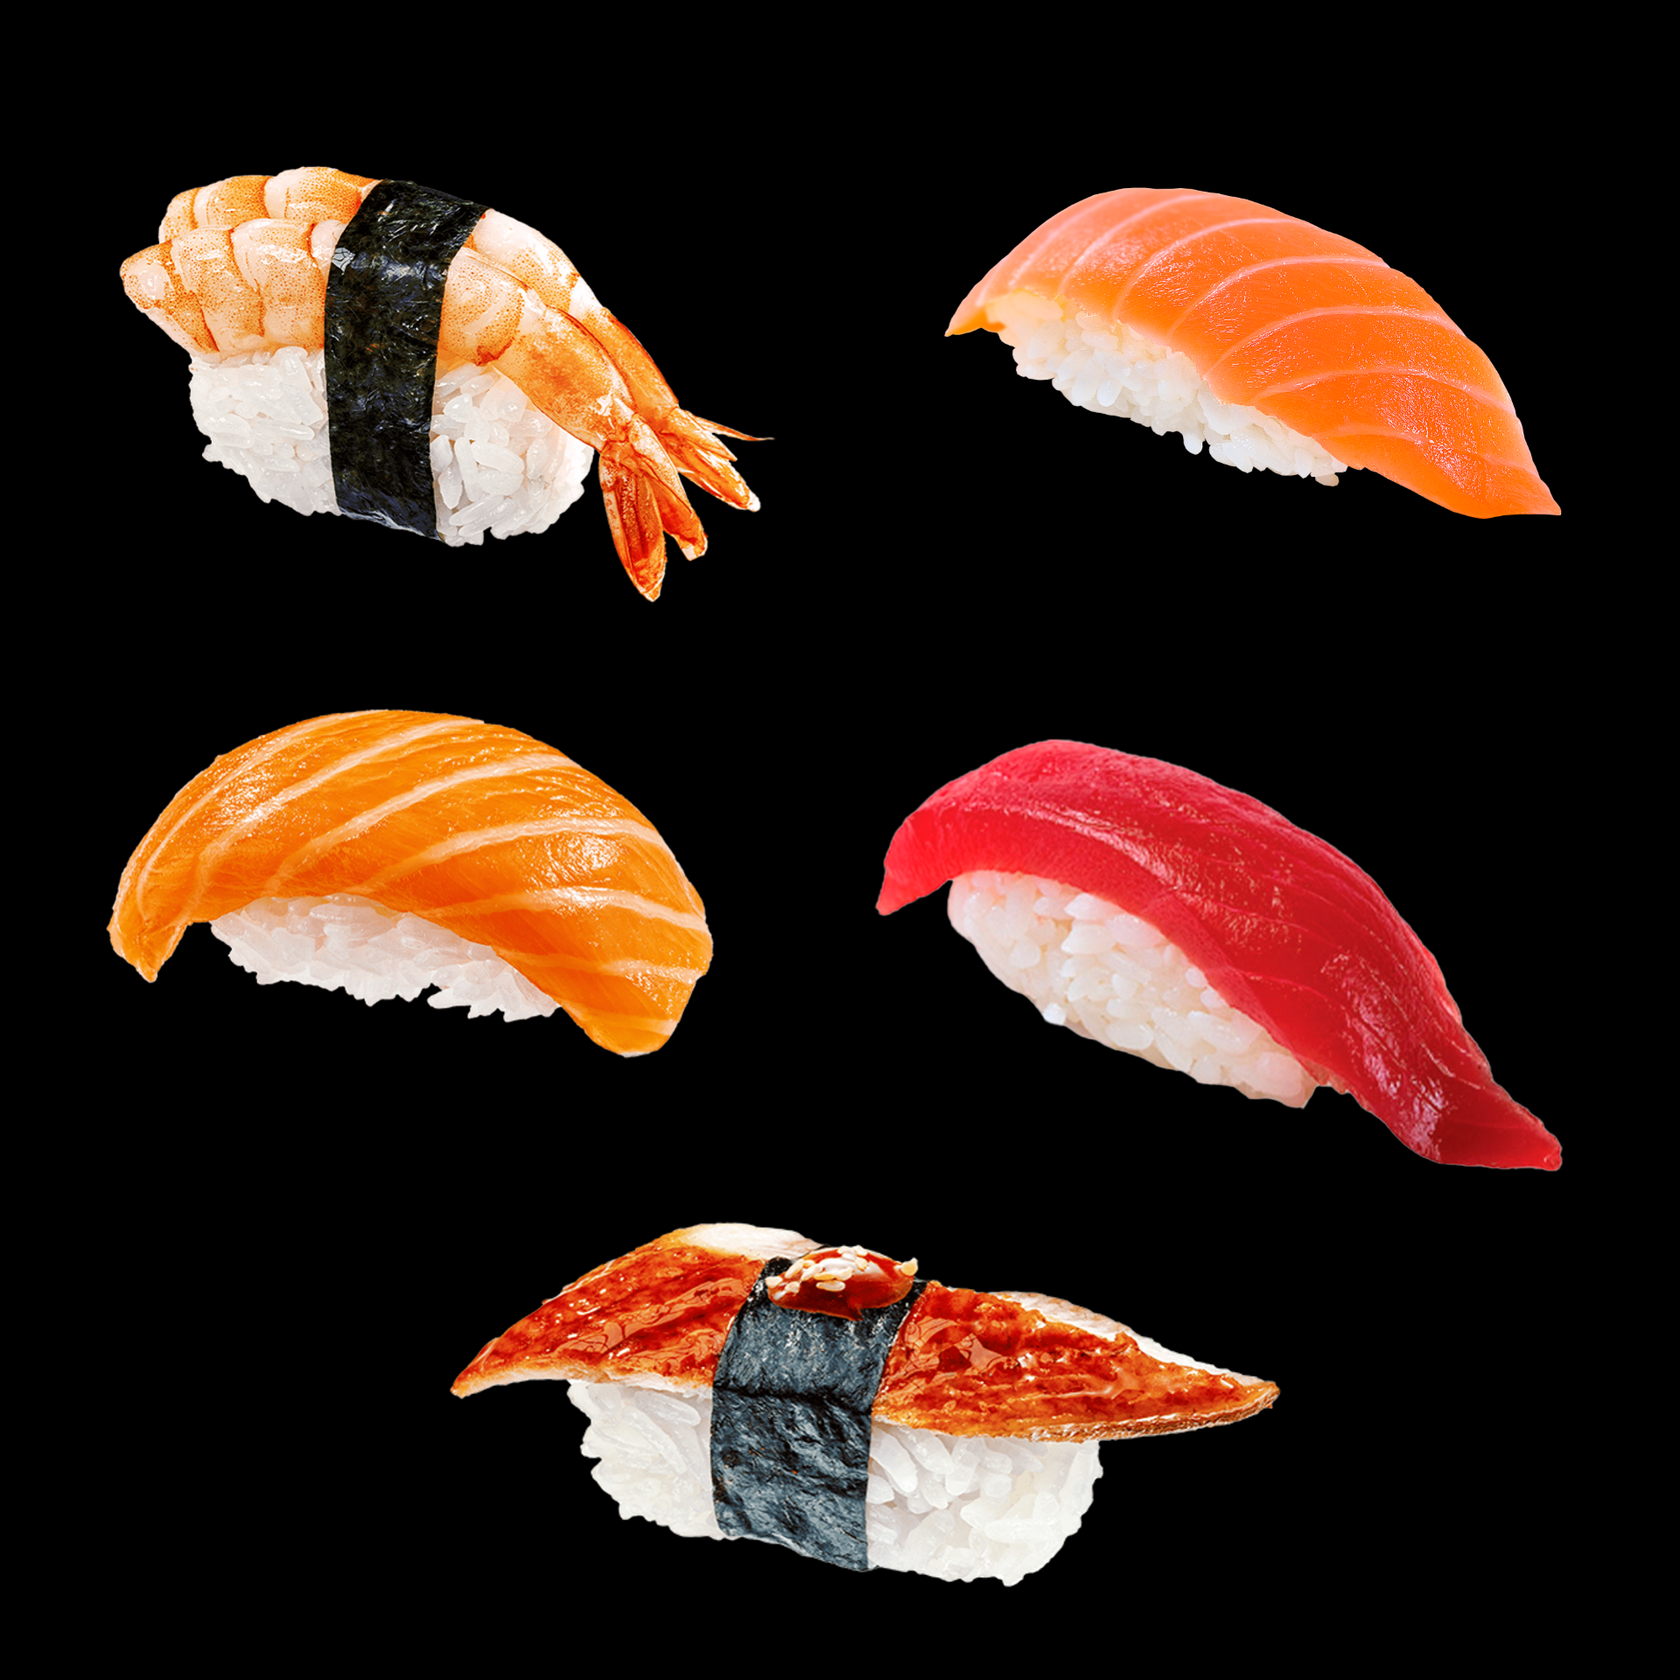 Заказать набор суши с доставкой в спб фото 88